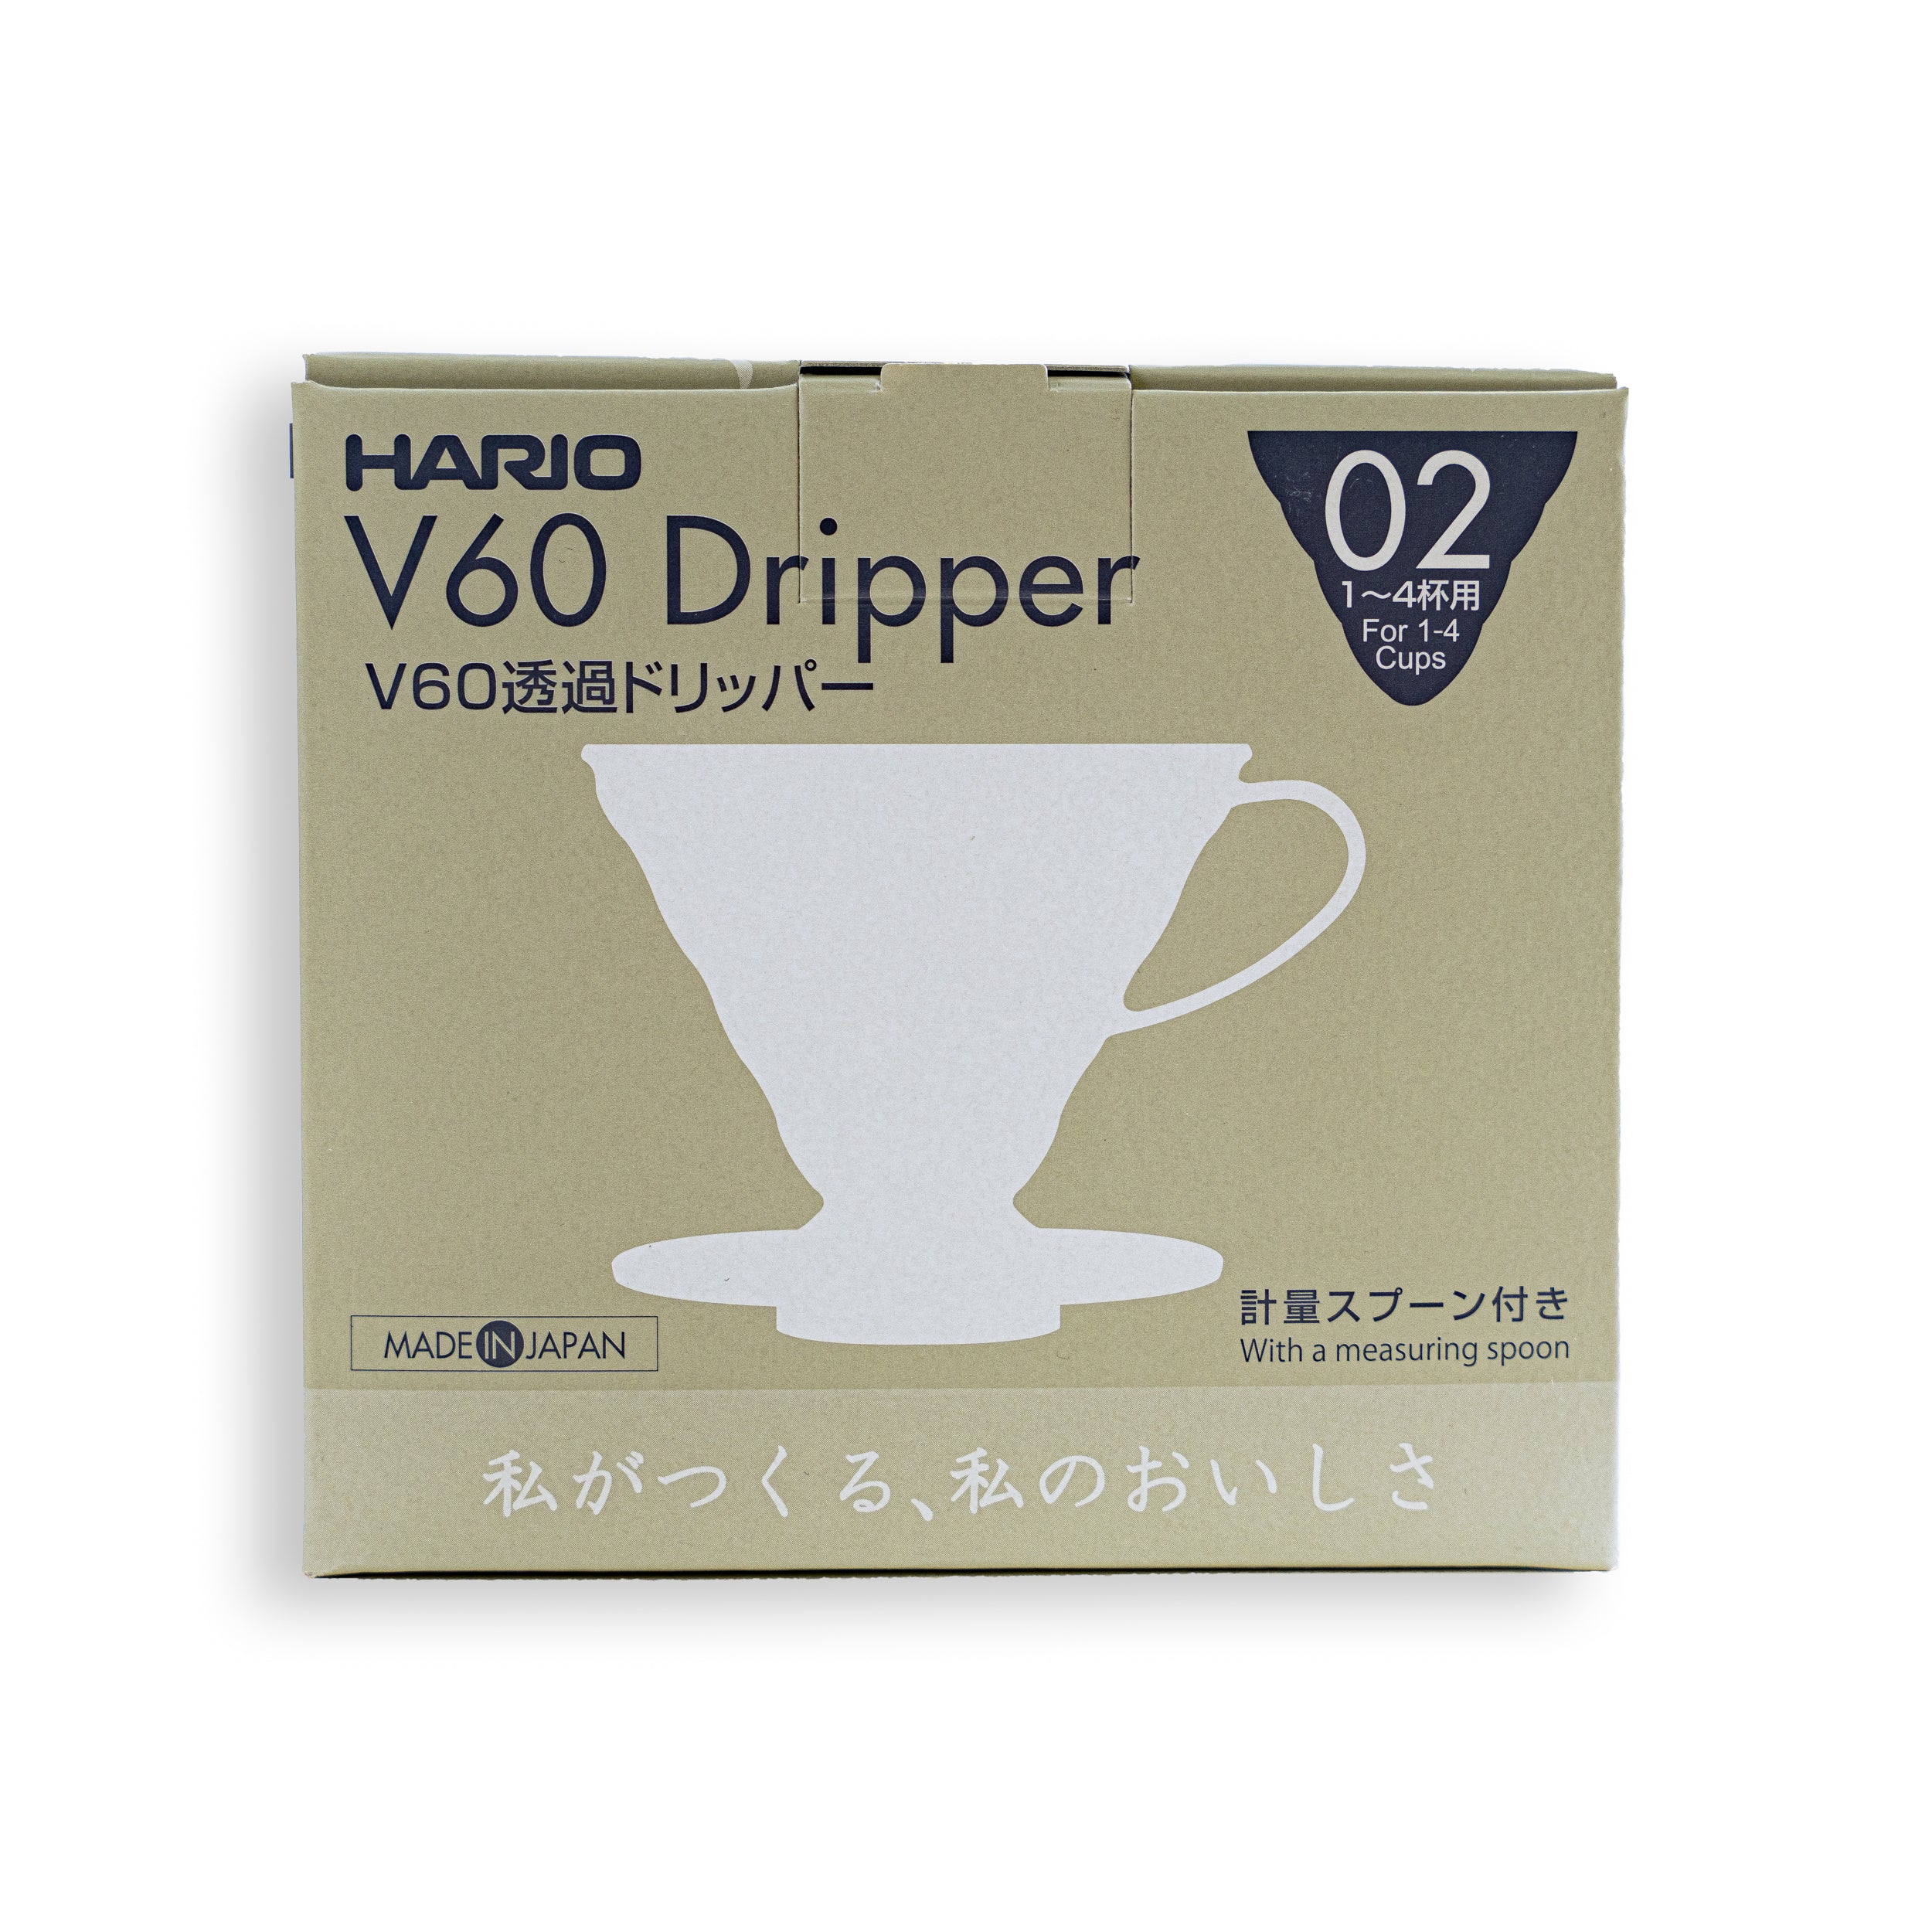 Hario V60 Dripper (02)